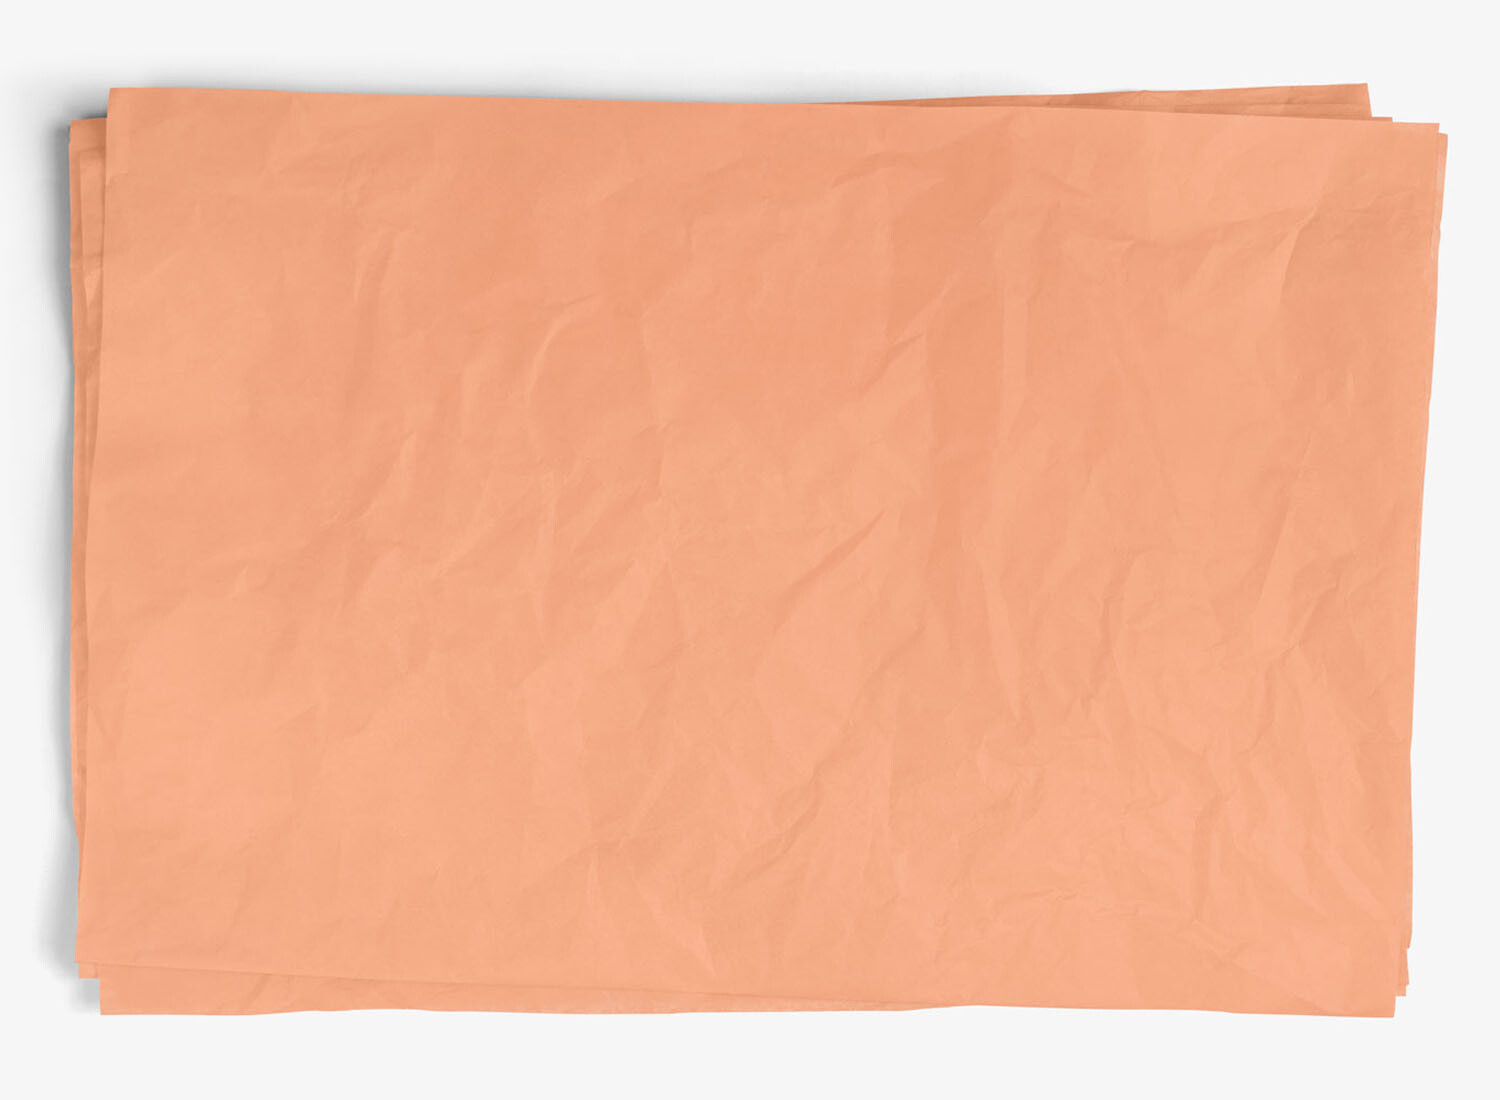 Peach tissue paper - waxed